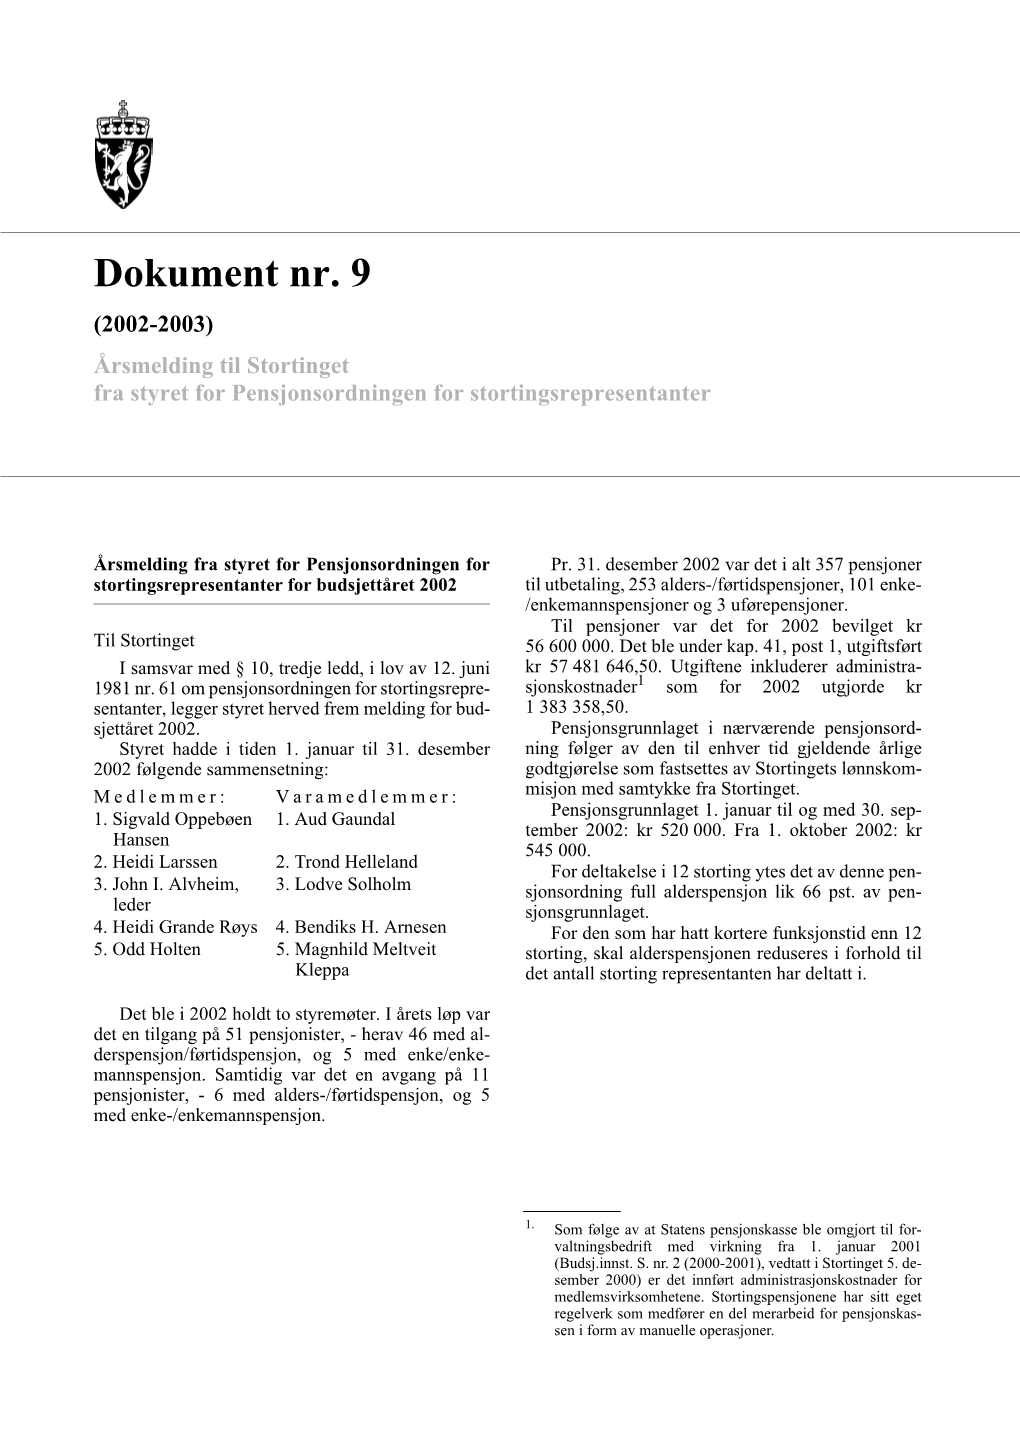 Dokument Nr. 9 (2002-2003) Årsmelding Til Stortinget Fra Styret for Pensjonsordningen for Stortingsrepresentanter